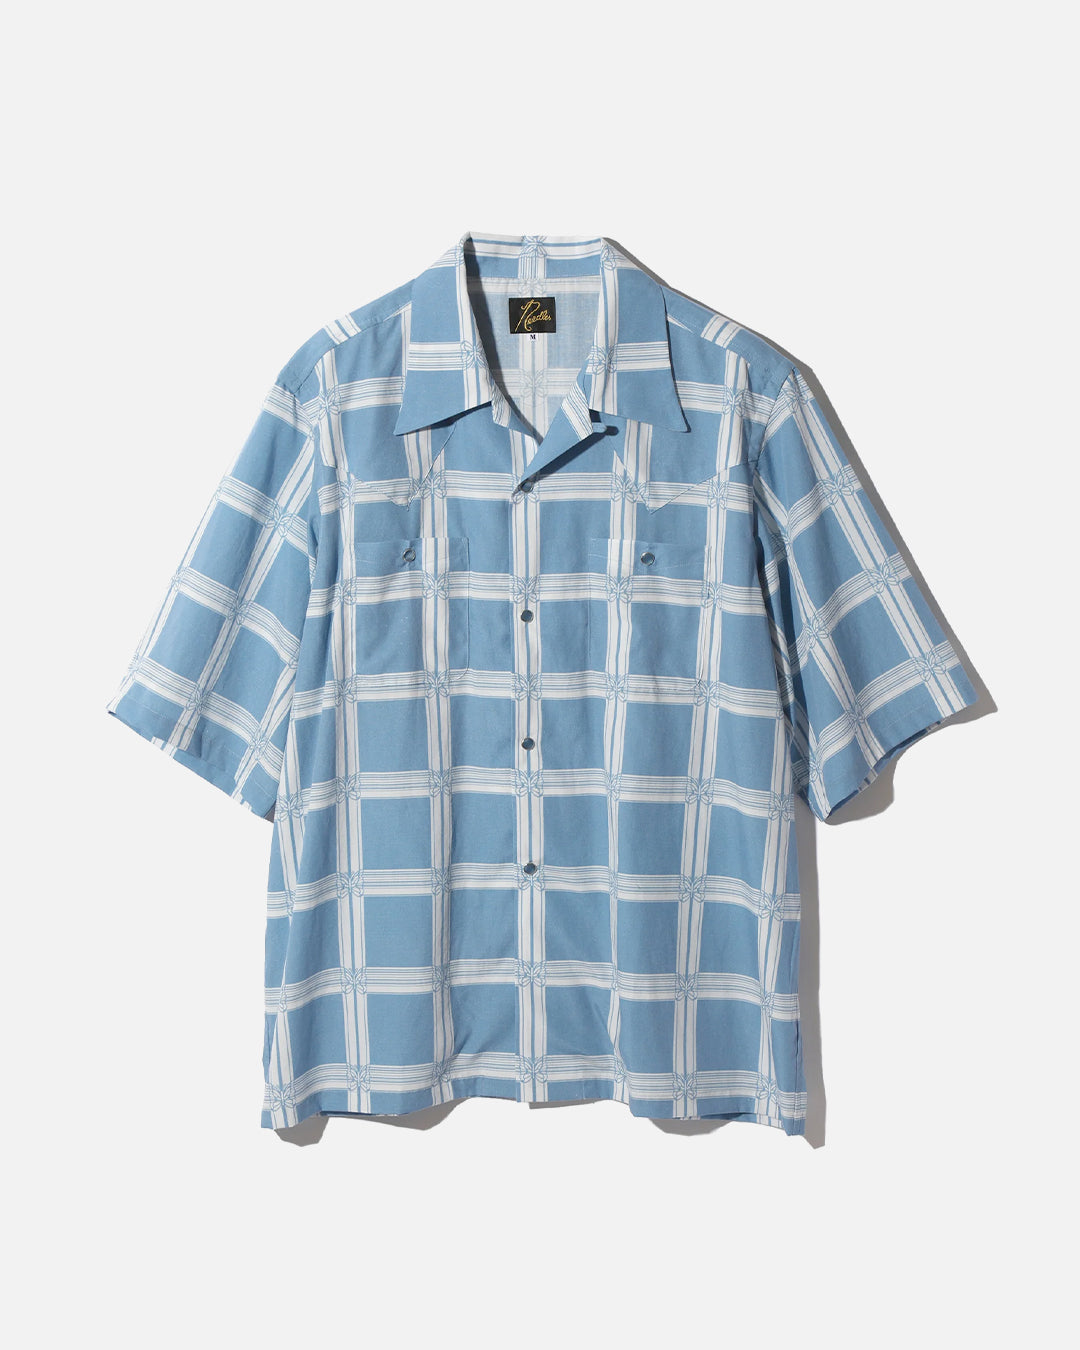 S/S Cowboy One-Up Shirt - R/C Lawn Cloth / Papillon Plaid - Blue